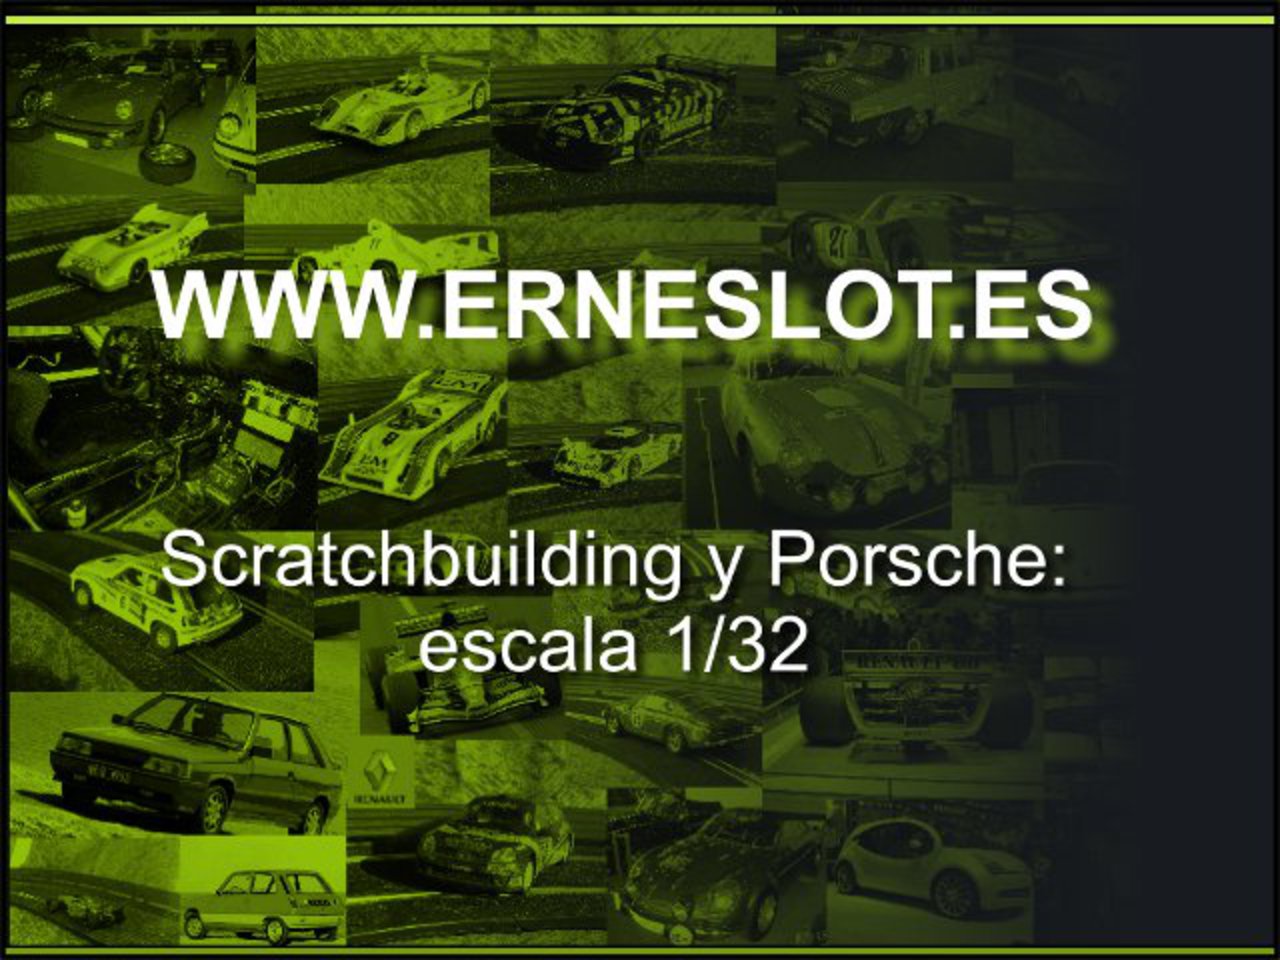 www.erneslot.es - Ernesto Scratch & Build et Porsche à l'échelle 1/32...